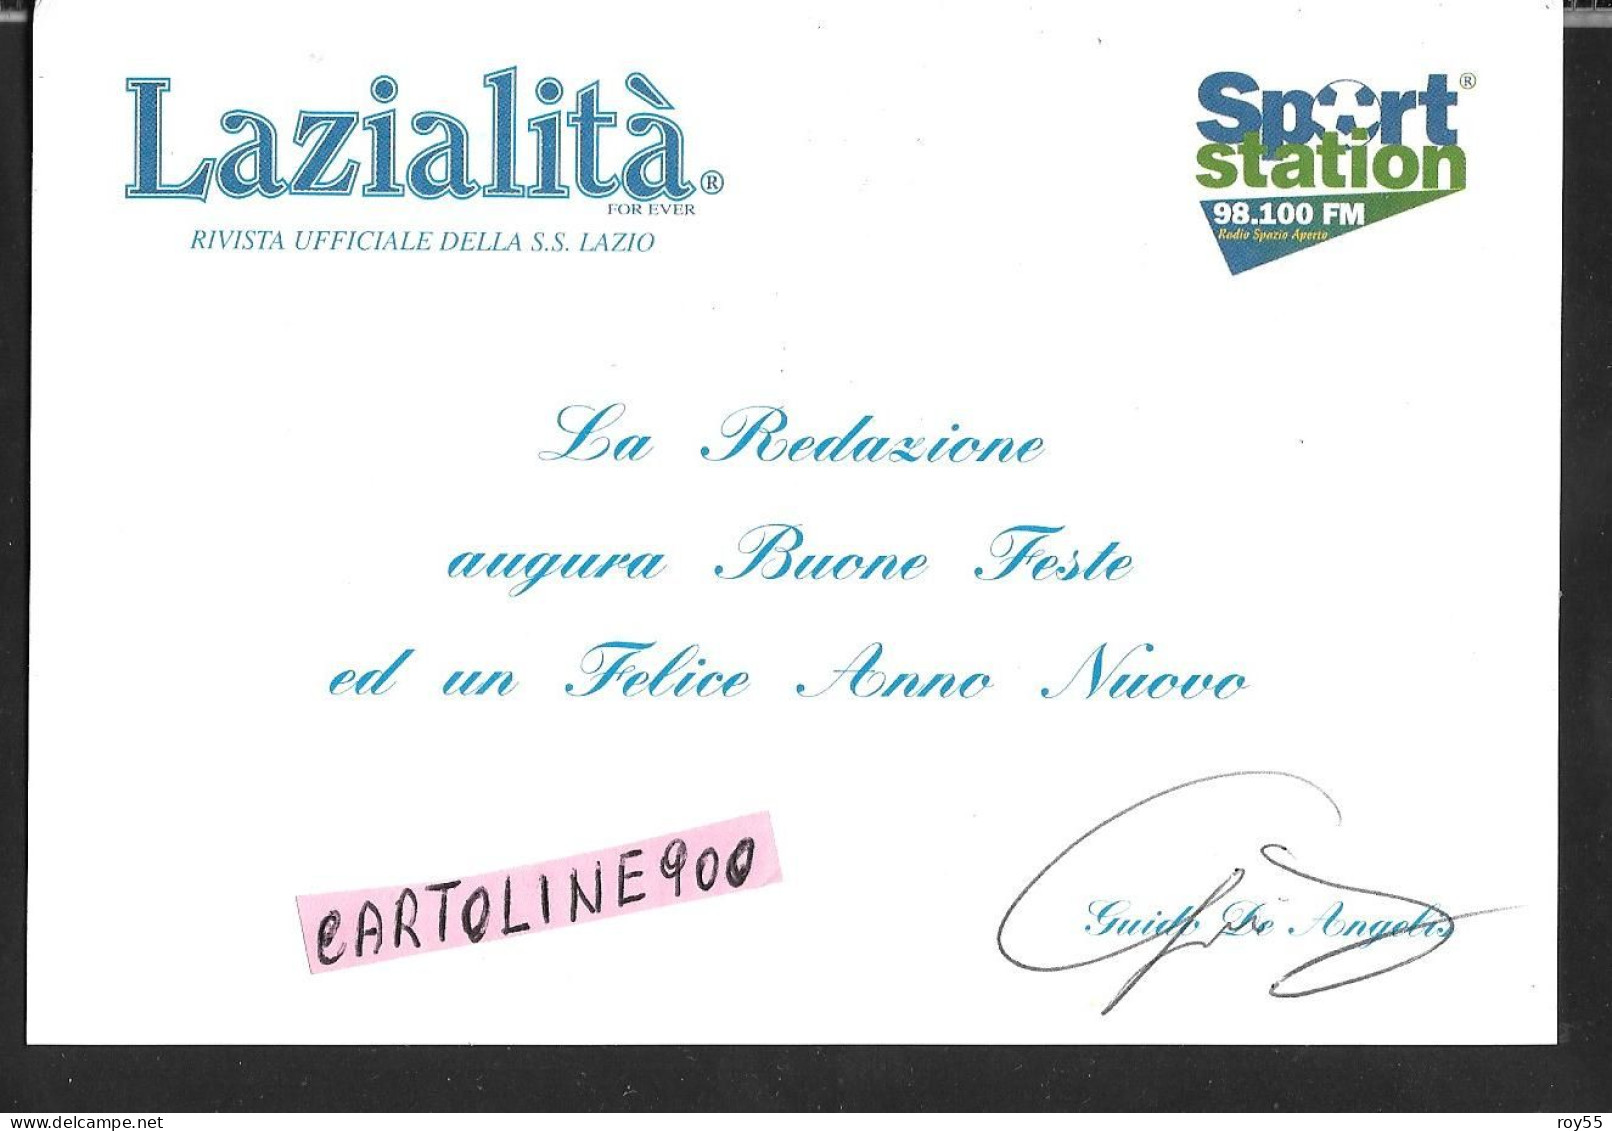 Sport Calcio Lazialita For Ever Rivista Ufficiale Ss Lazio Calcio 1900 Sport Station 98.100 Fm Di Guido De Angelis - Soccer